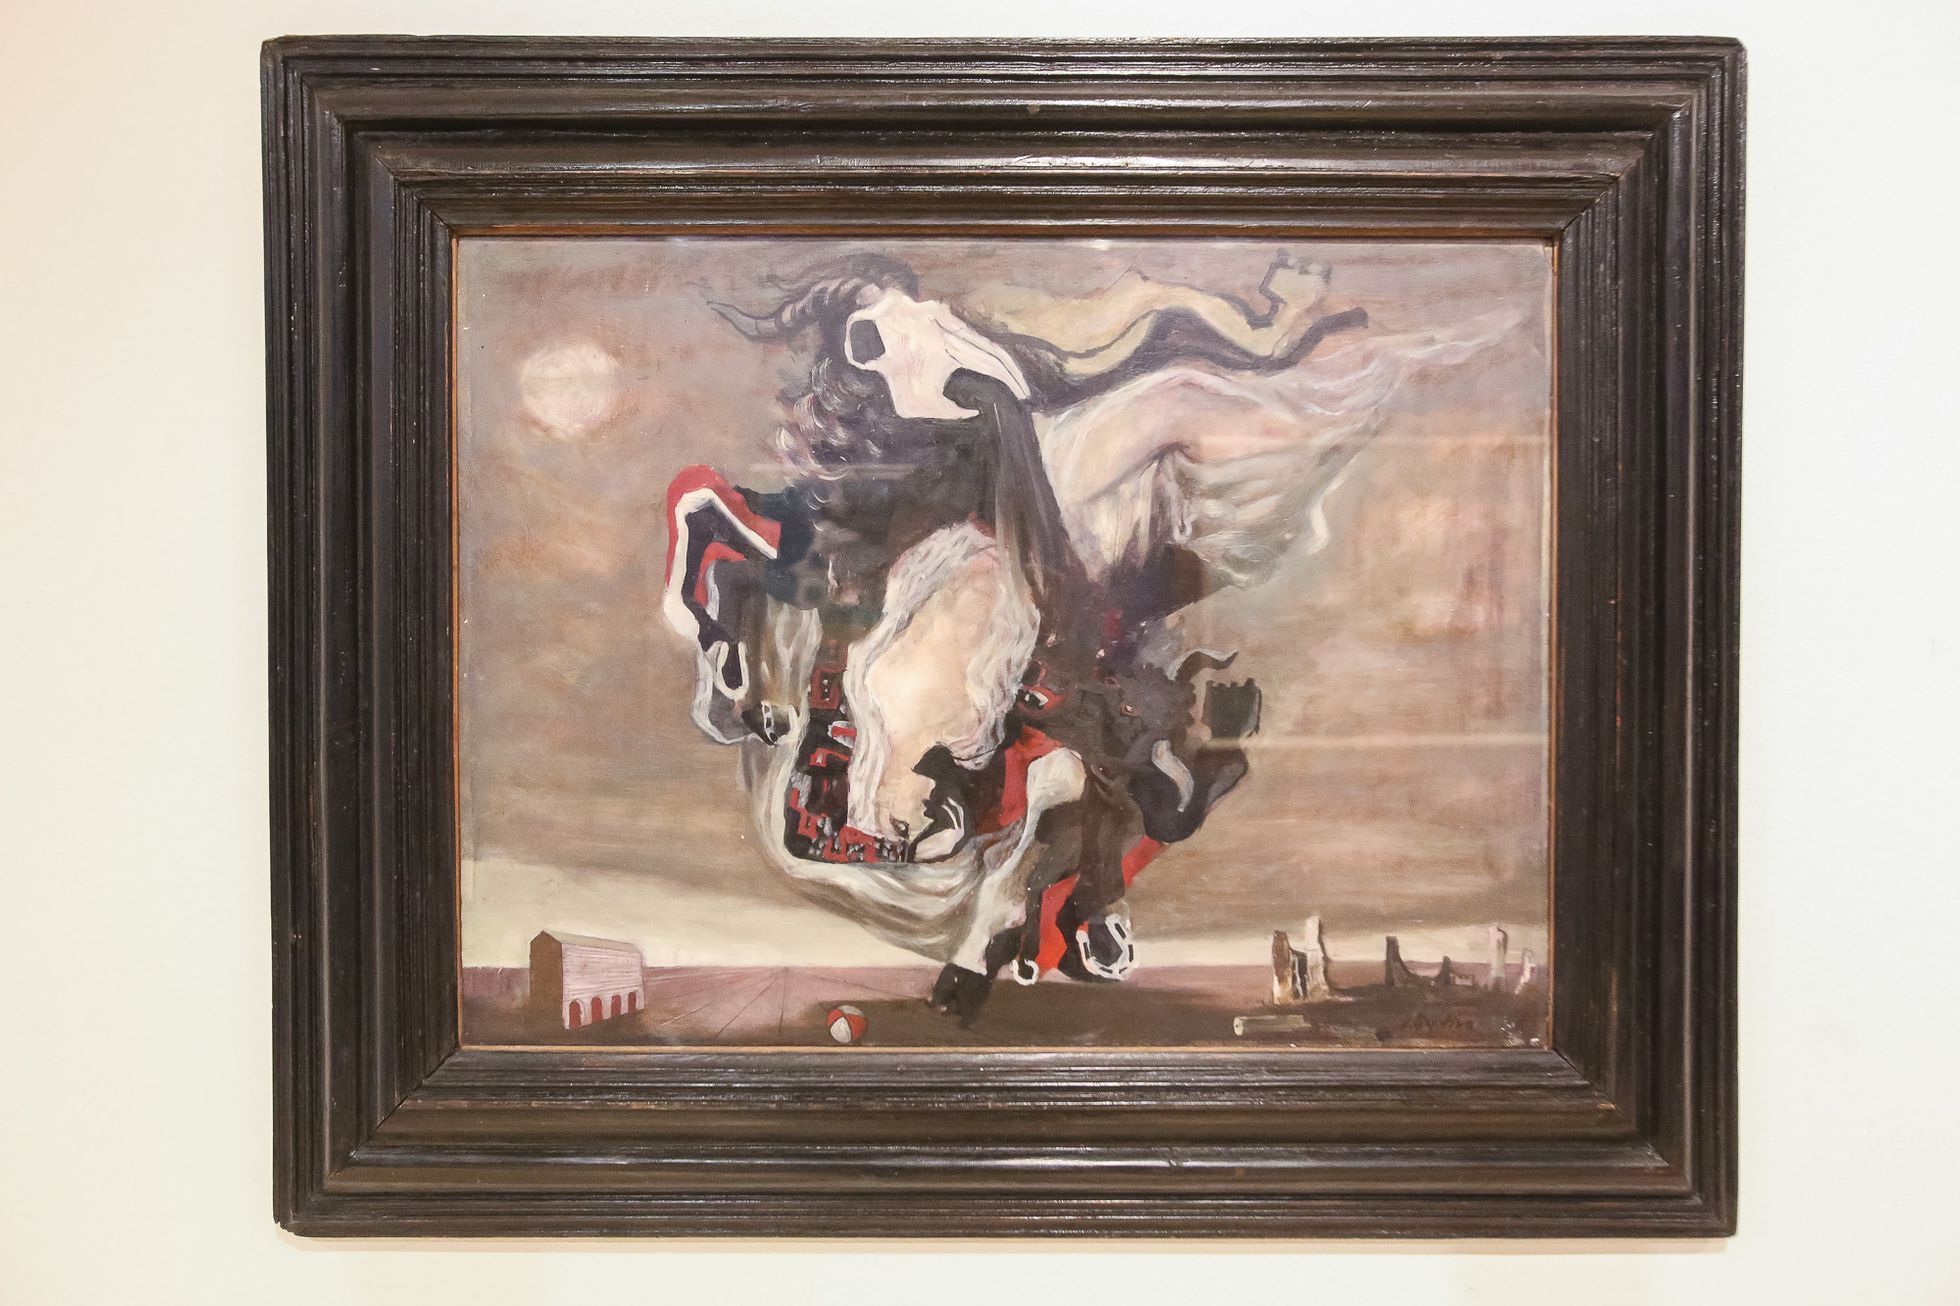 Výstava děl malíře Emila Filly v Museu Kampa